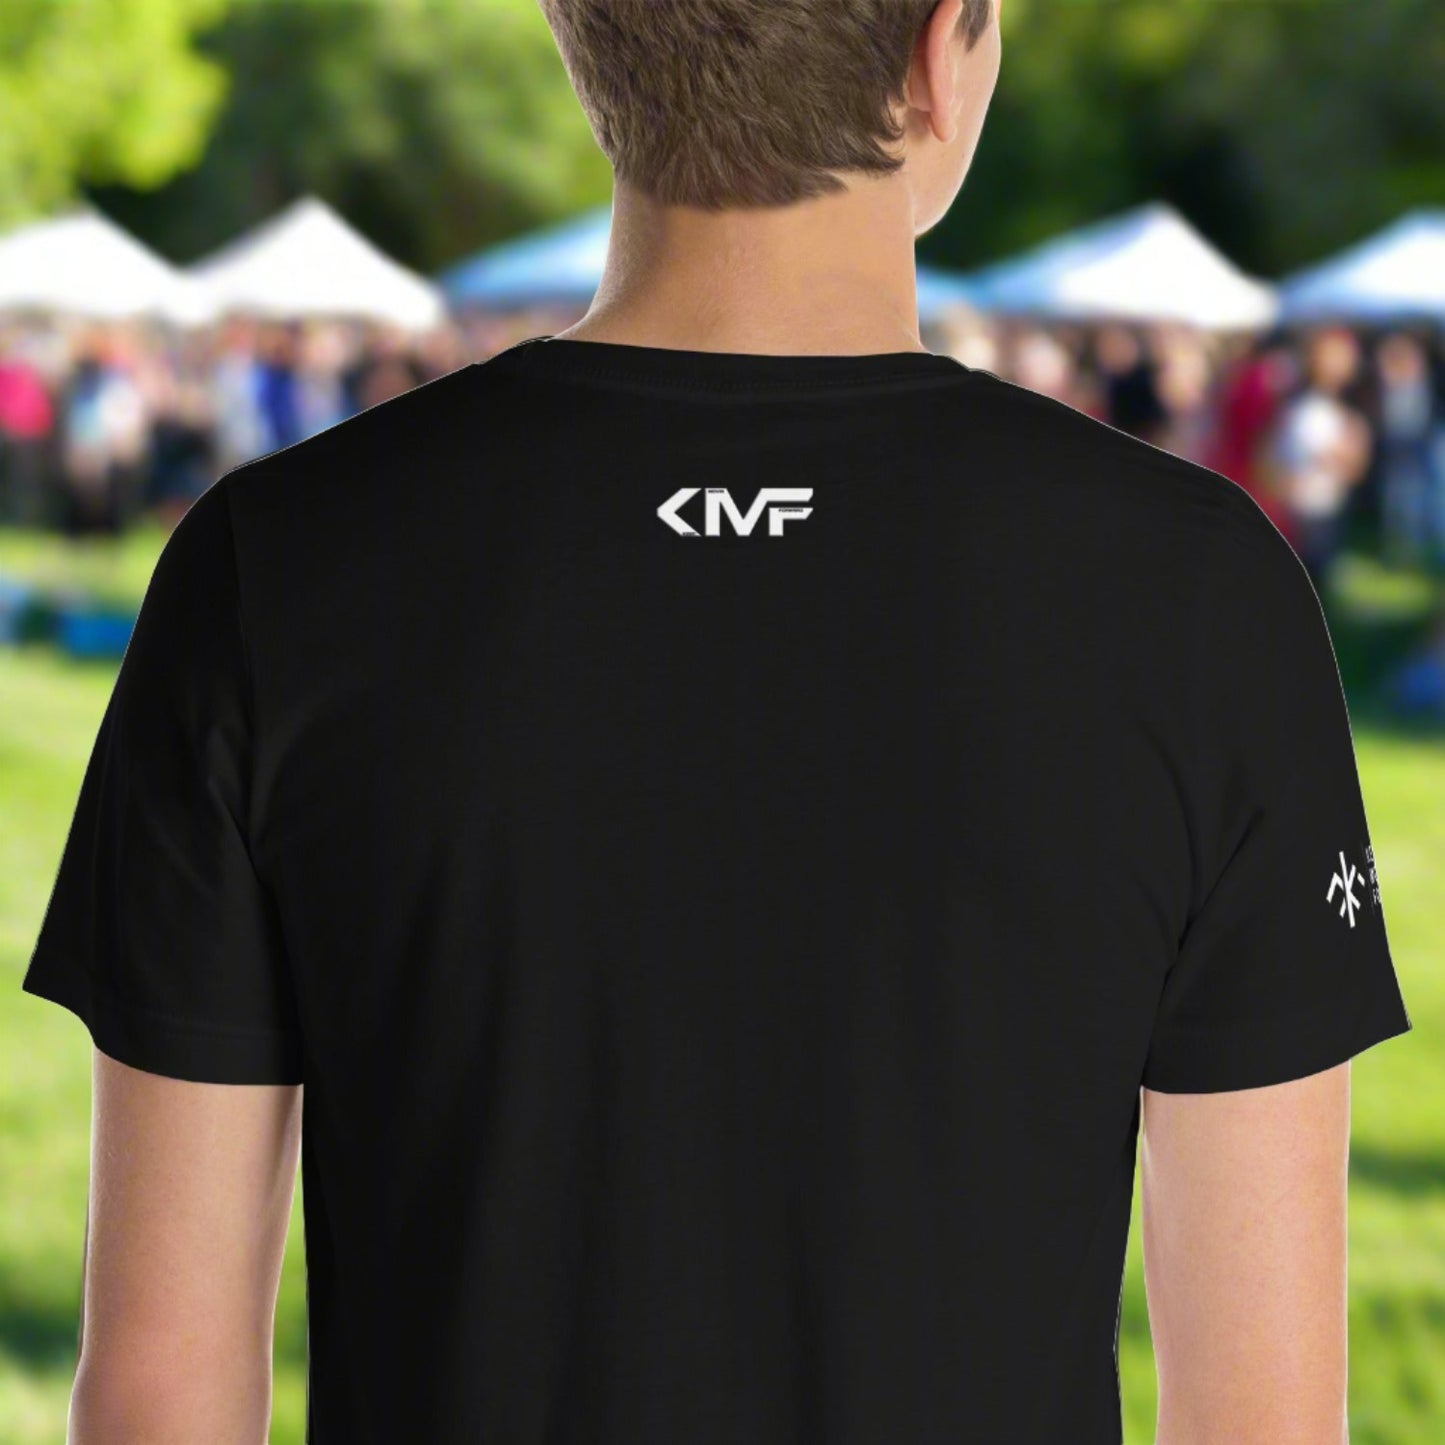 KMF Creed t-shirt